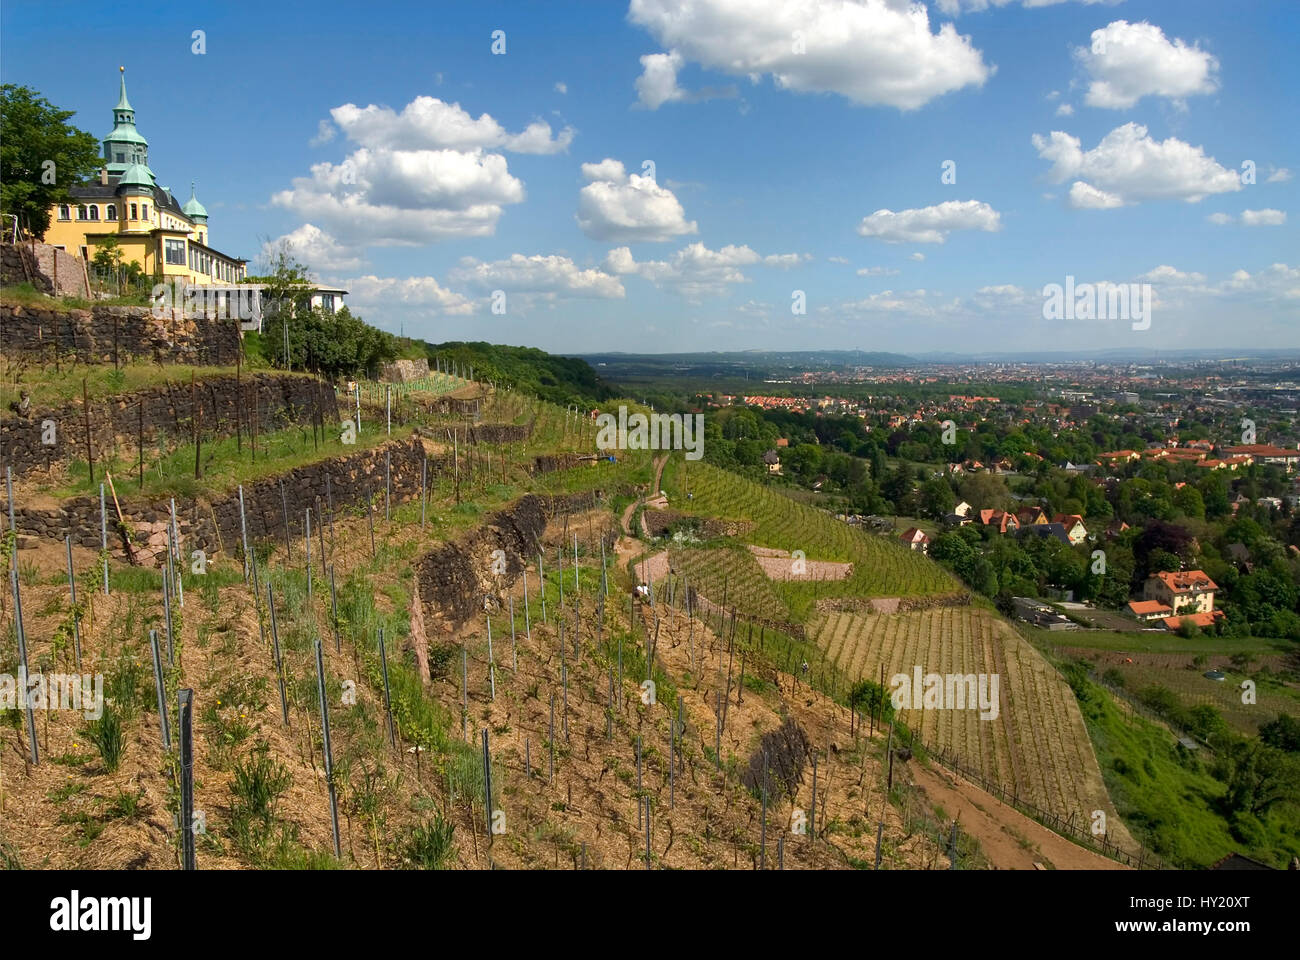 Stock Foto von einem Blick über das Elbtal ein Welterbe-Bereich von der Weinberge von Radebeul bei Dresden gesehen. Auf der Lefthandside sehen Sie th Stockfoto